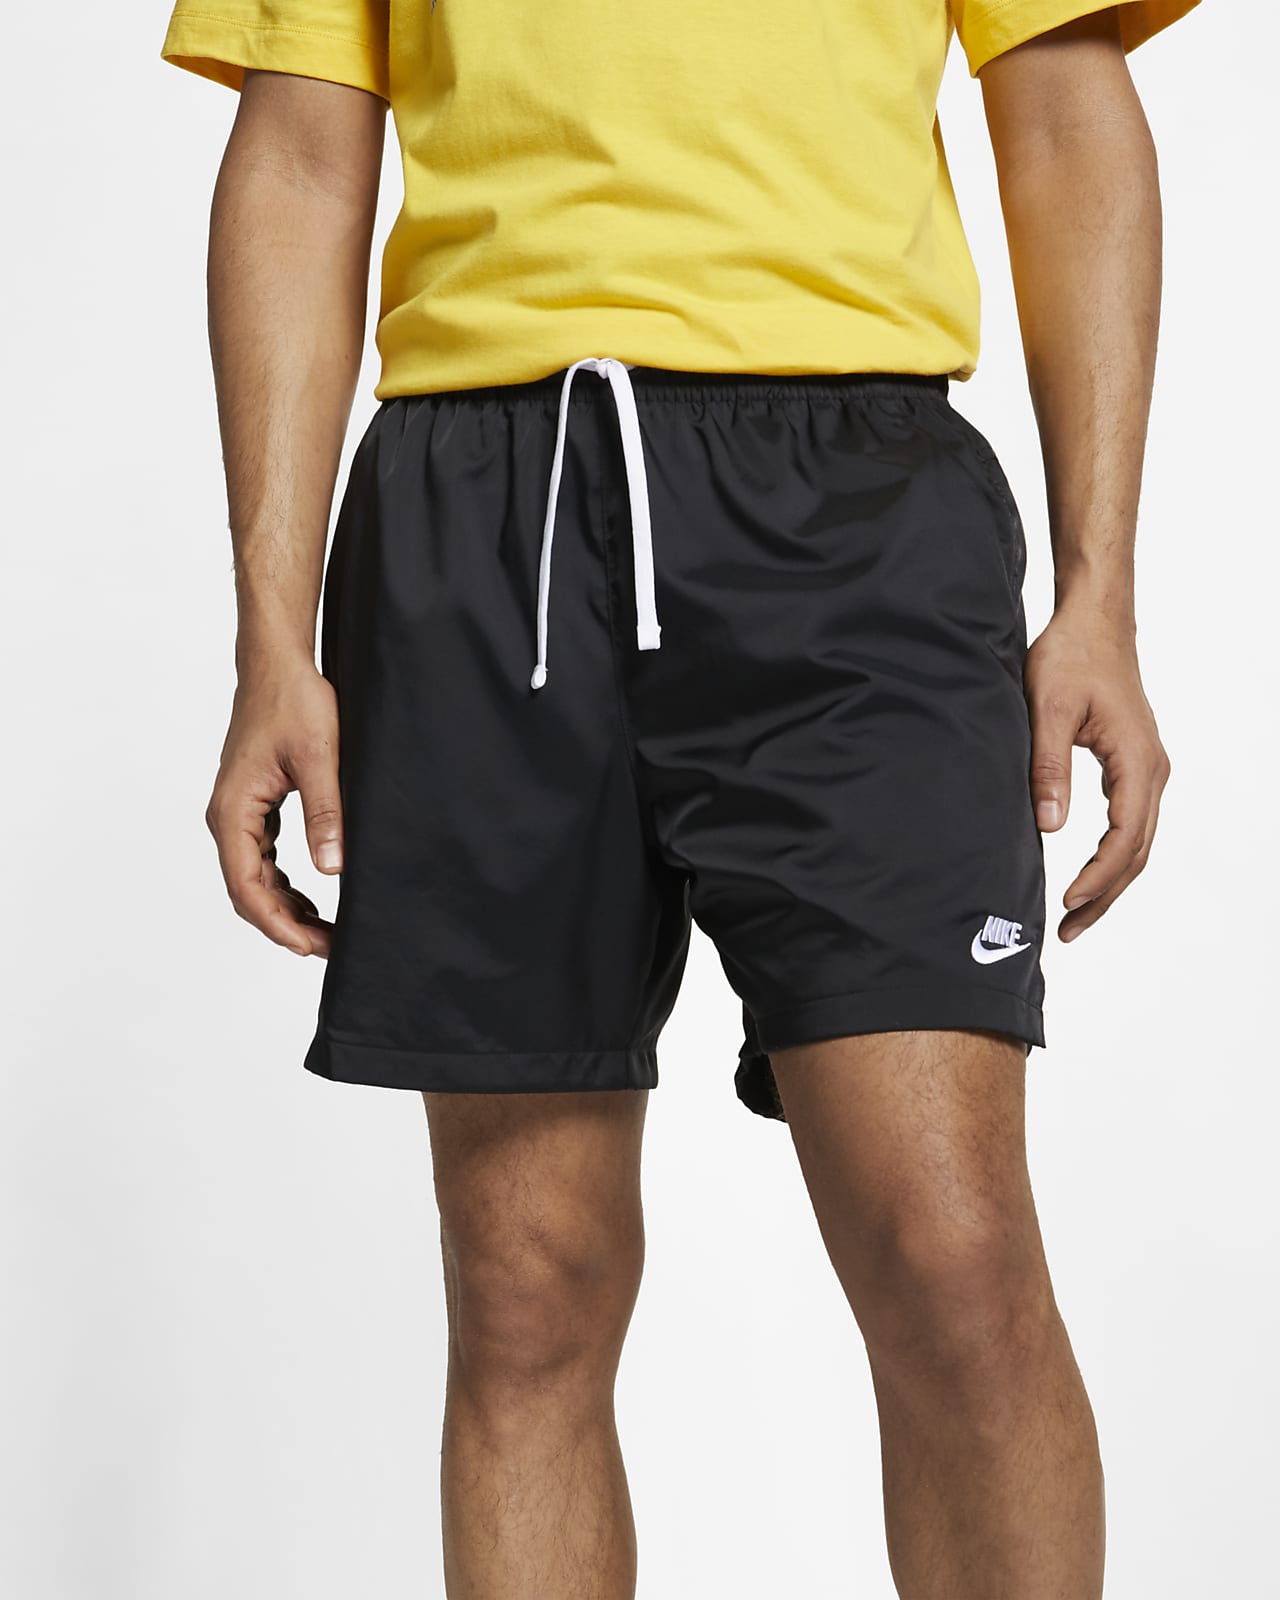 Ανδρικό υφαντό σορτς για ελευθερία κινήσεων Nike Sportswear